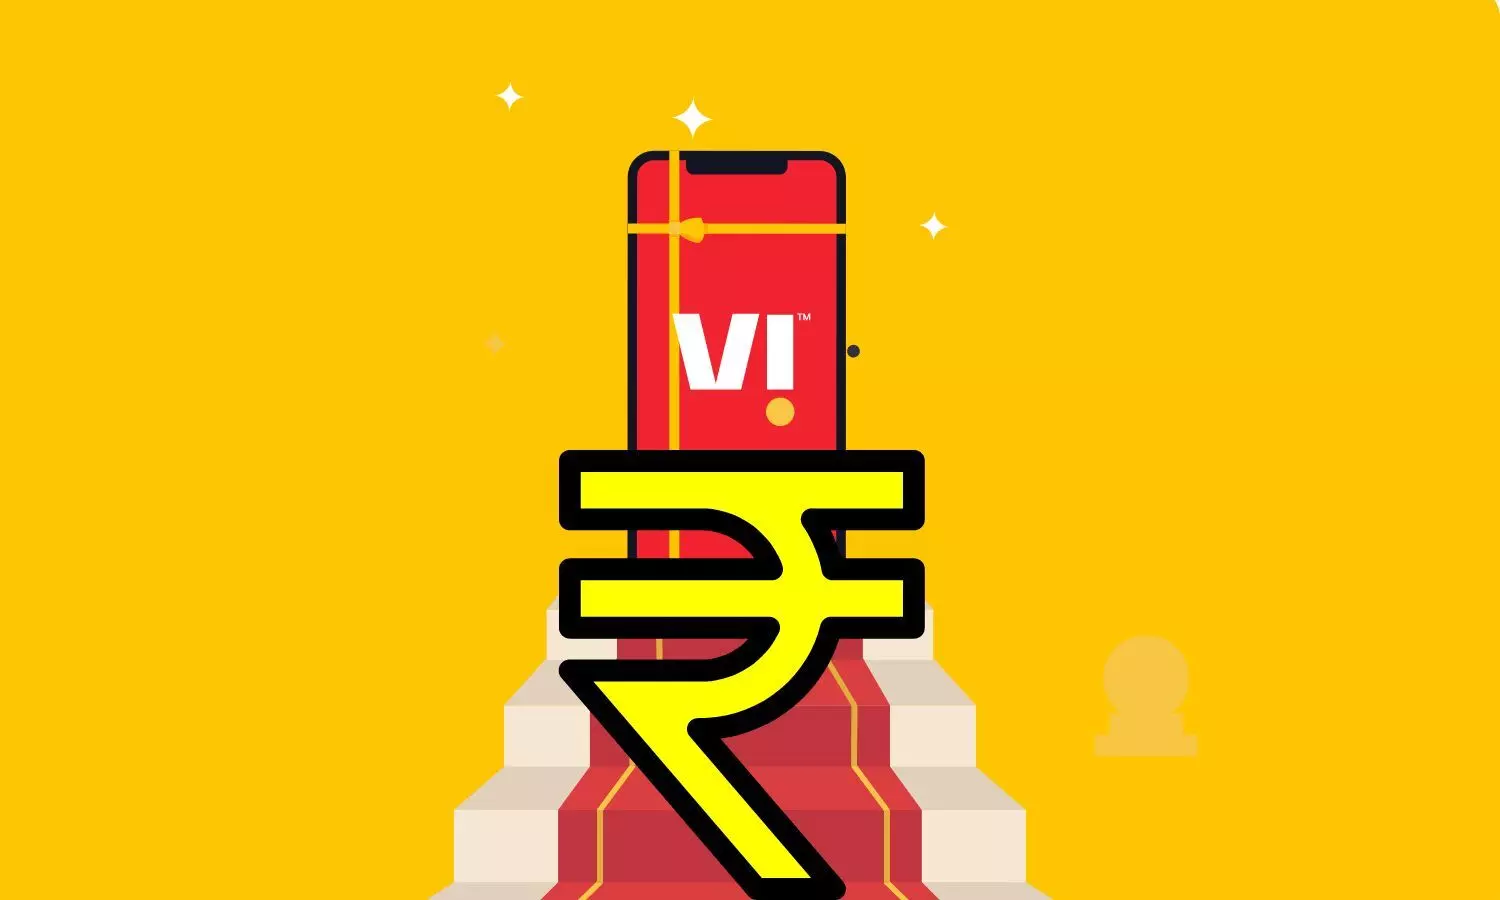 Vi logo and Rupee